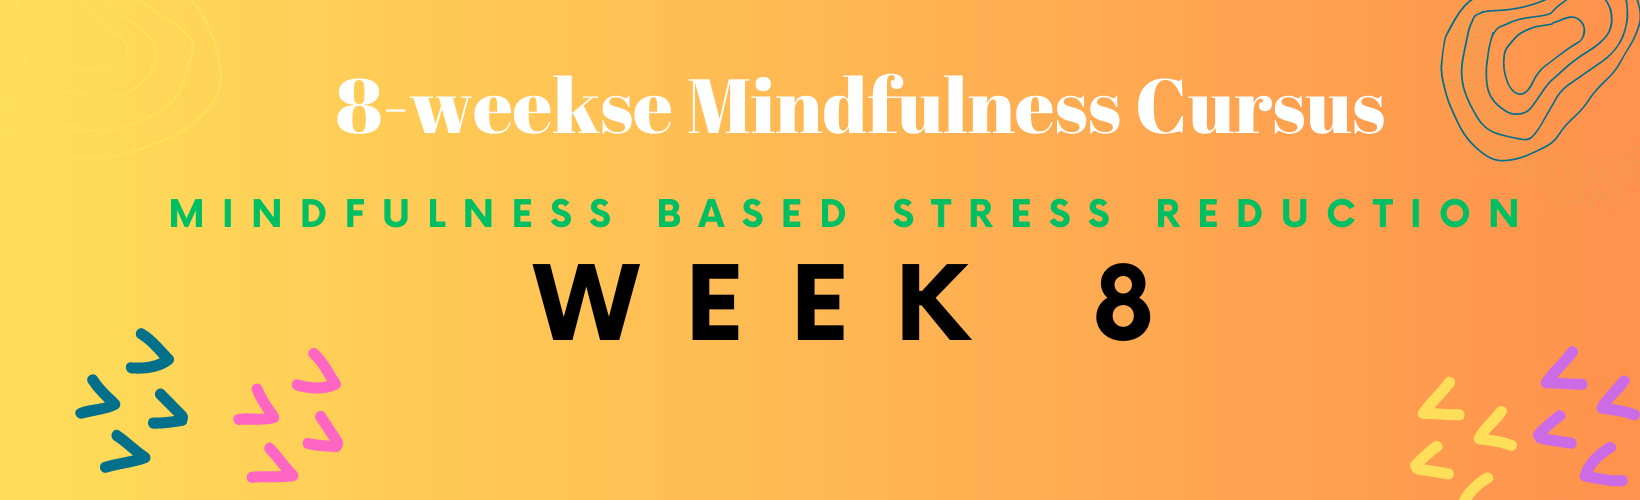 header week 8 mindfulness cursus 